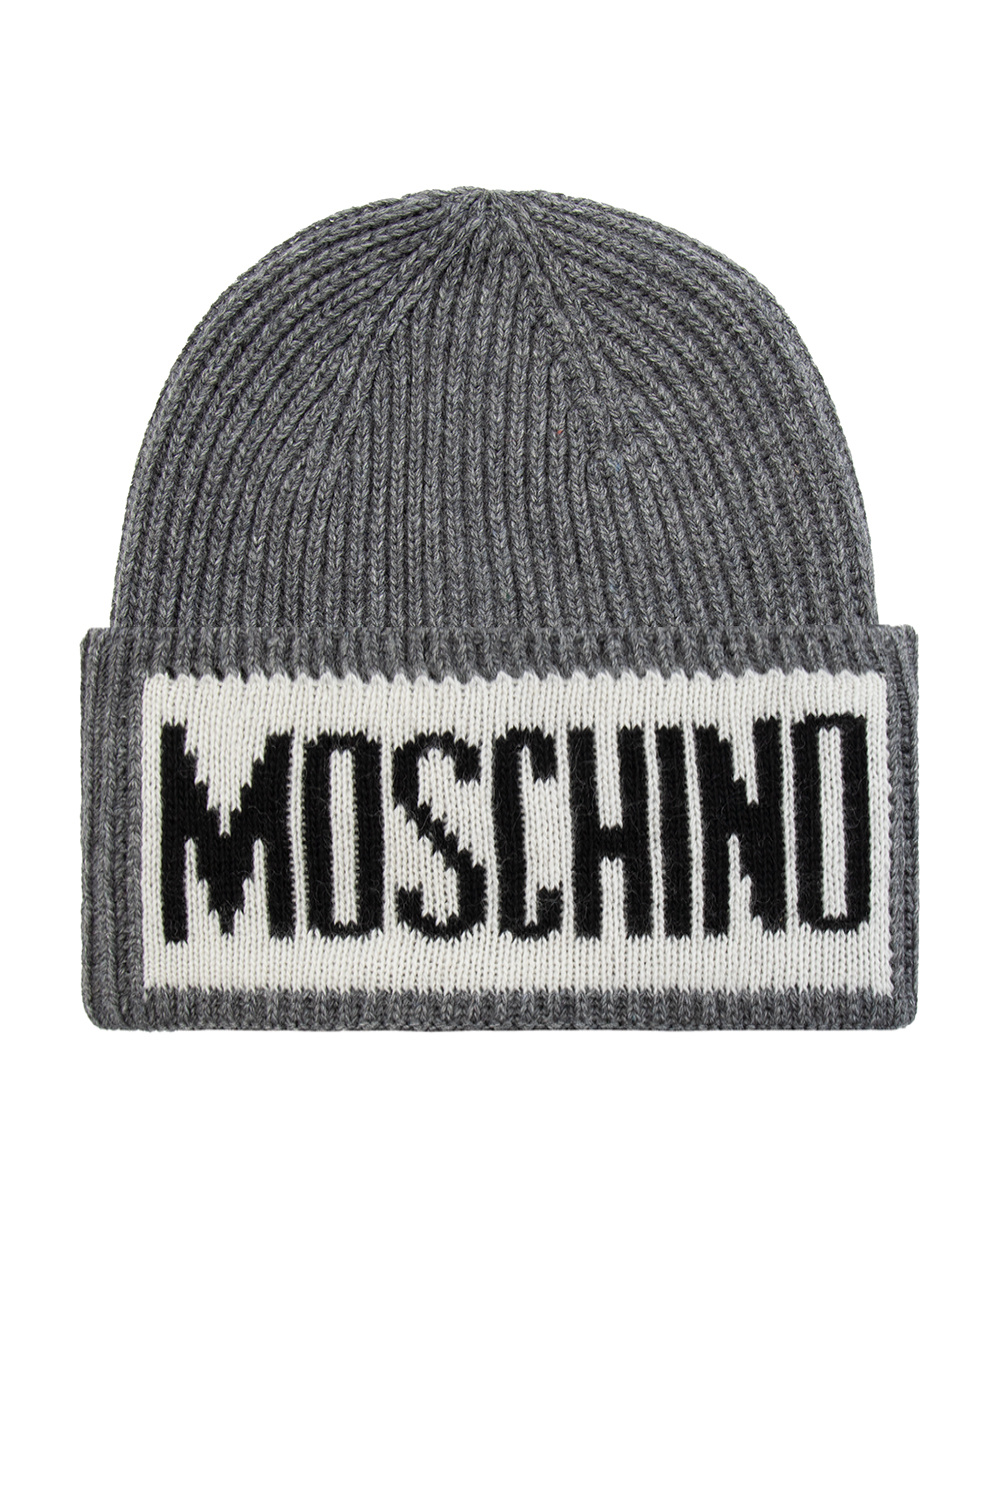 - Schwarz Louvre - Liberte-Print Baseballkappe IetpShops ERA NEW logo Hat CAP with Le Moschino Grey Canada mit